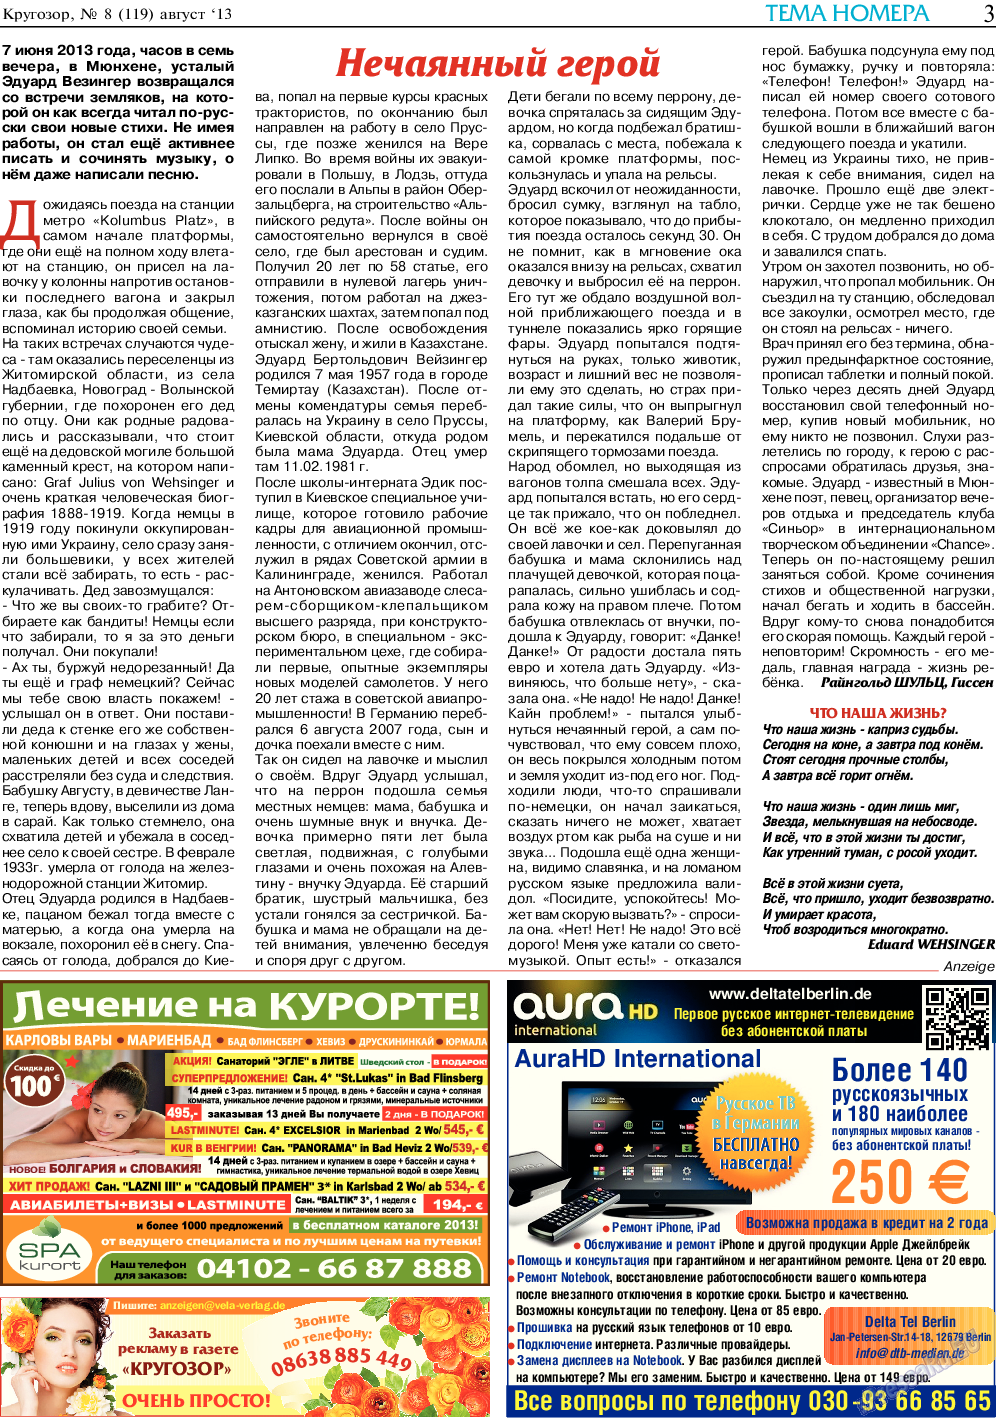 Кругозор, газета. 2013 №8 стр.3